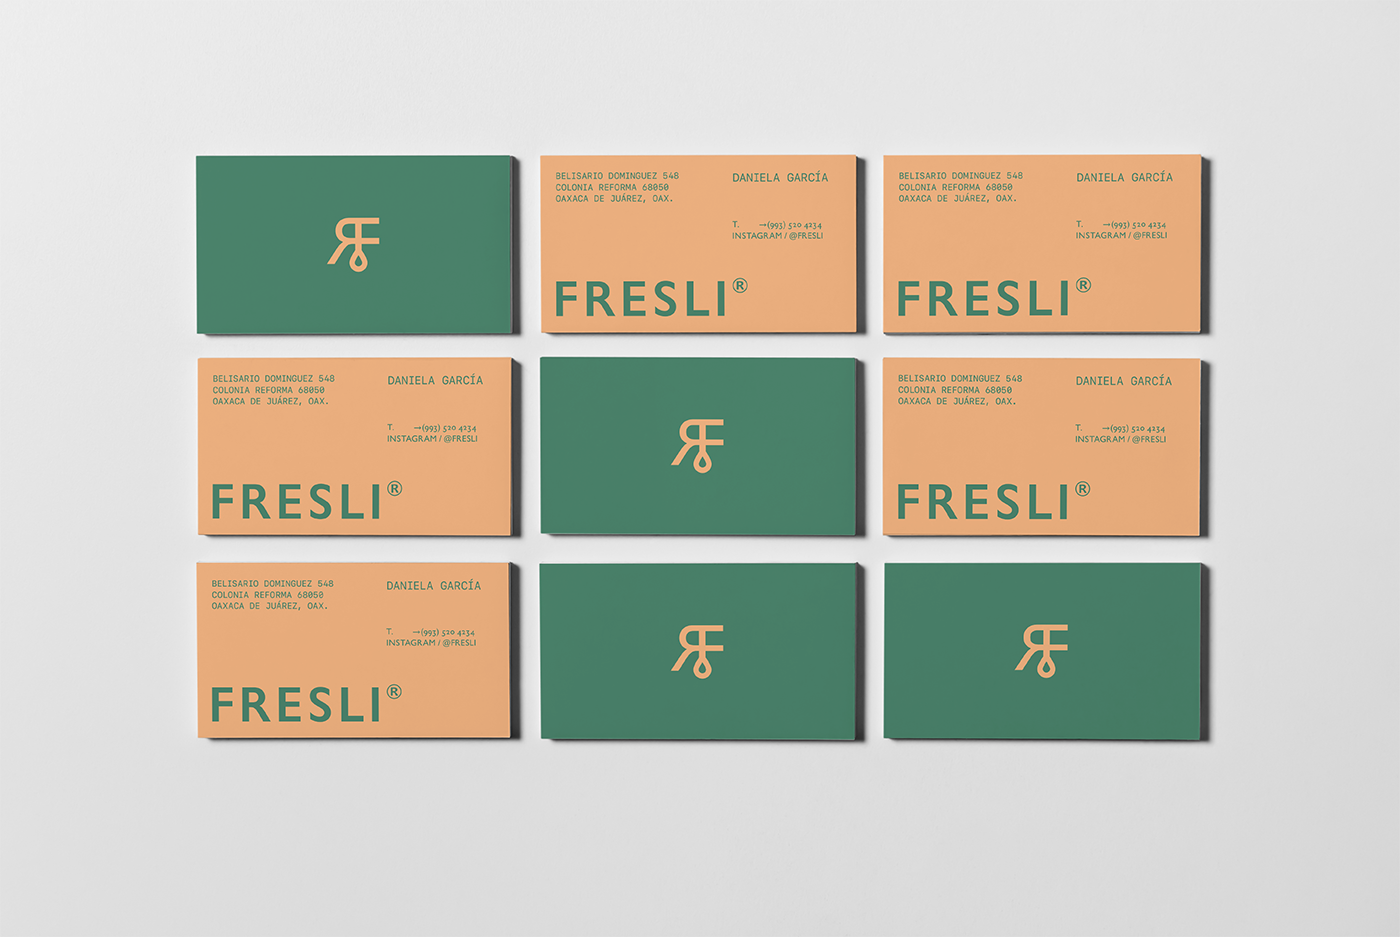 Fresli果汁品牌包装设计